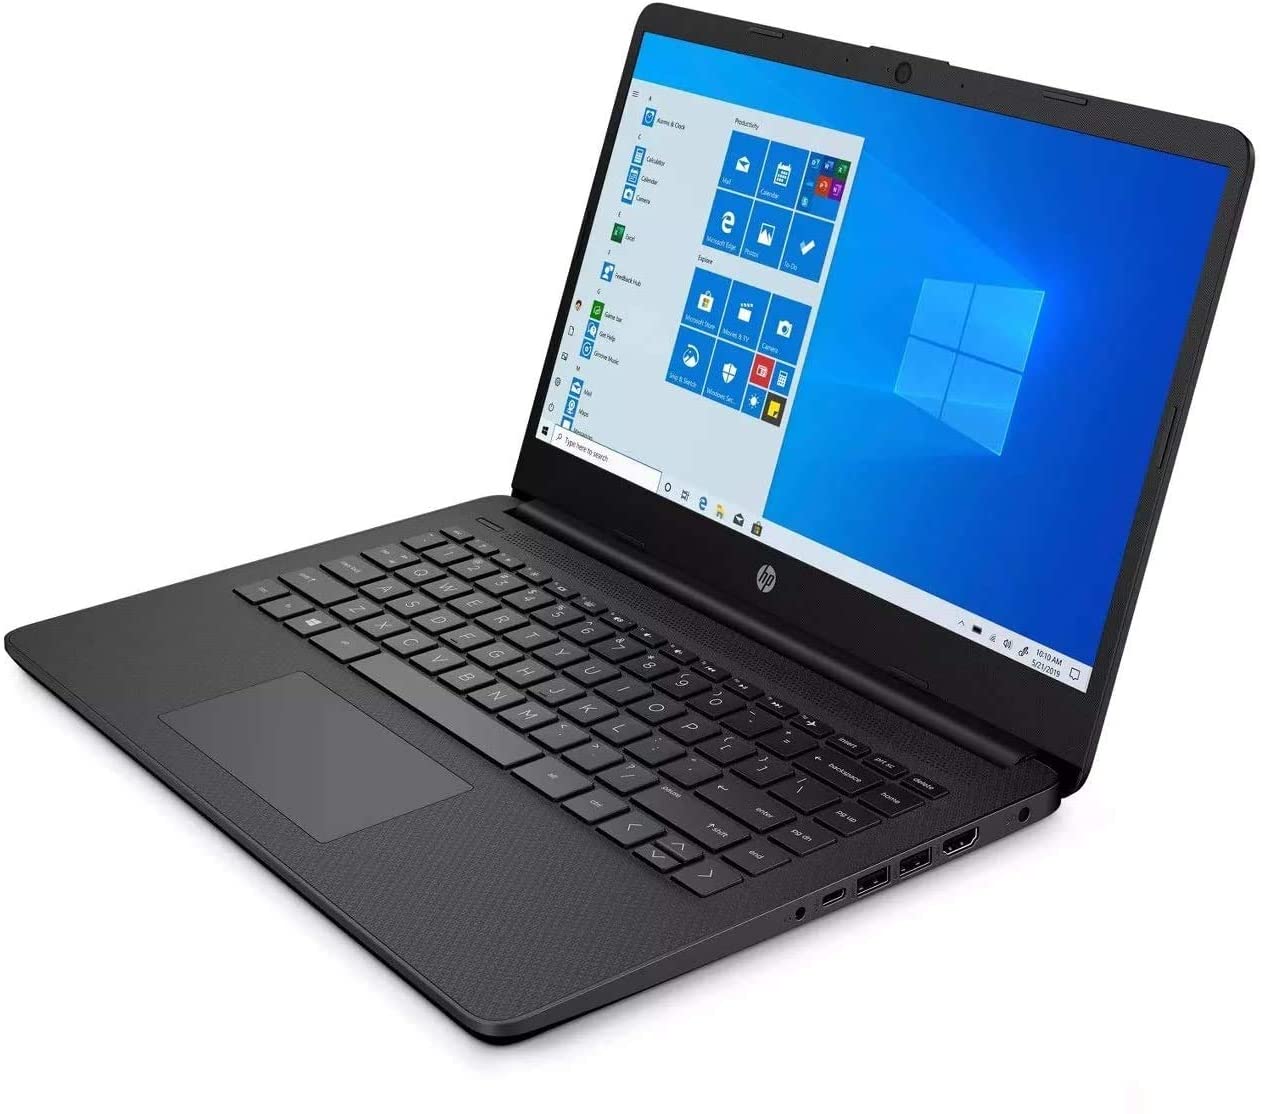 Laptop Hp, Procesador Intel Core i3 1115G4 hasta 4,10 GHz, 11va Gen, 4Gb Ram DDR4, Disco duro 256Gb SSD, Display 15,6 pulg,  no Dvd Wr, Teclado en Ingles Windows 10, Full regalos